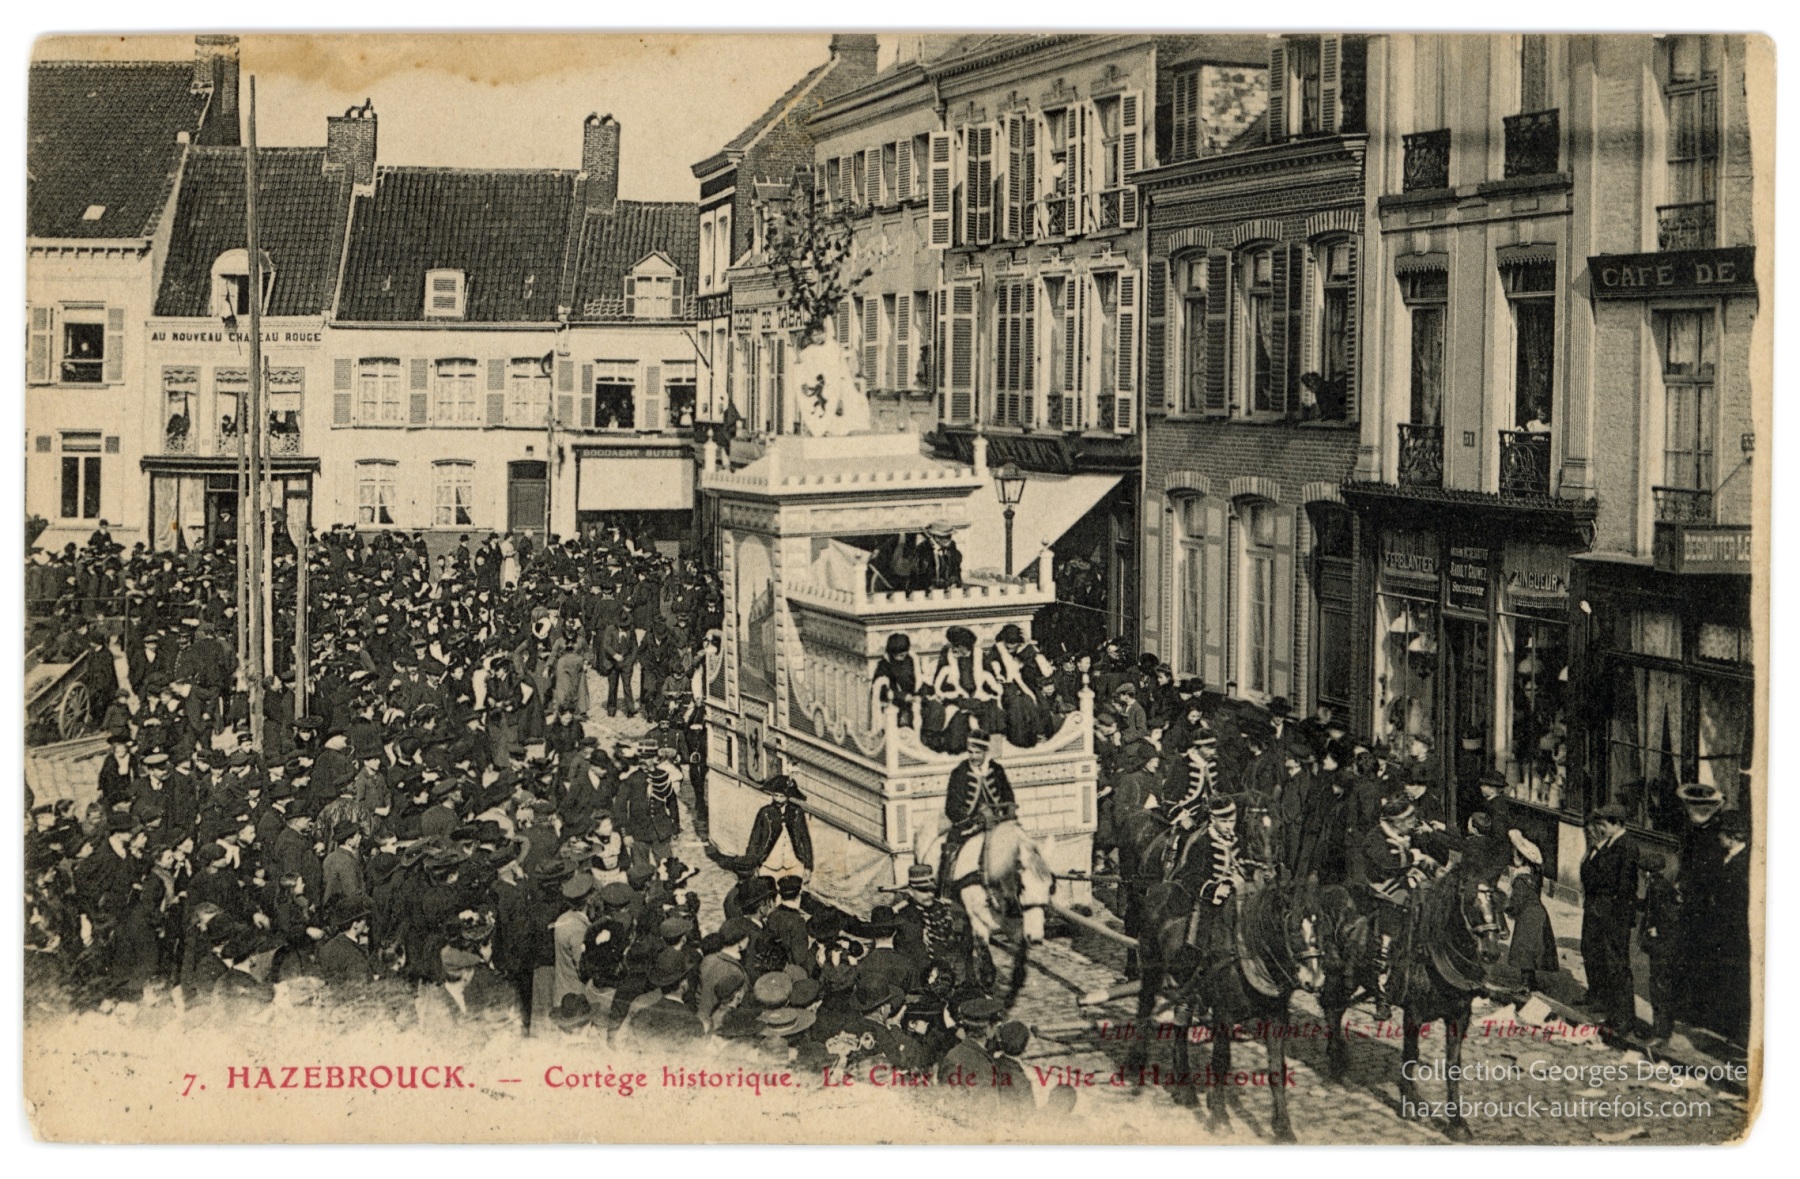 Cortège historique - Le char de la Ville d'Hazebrouck